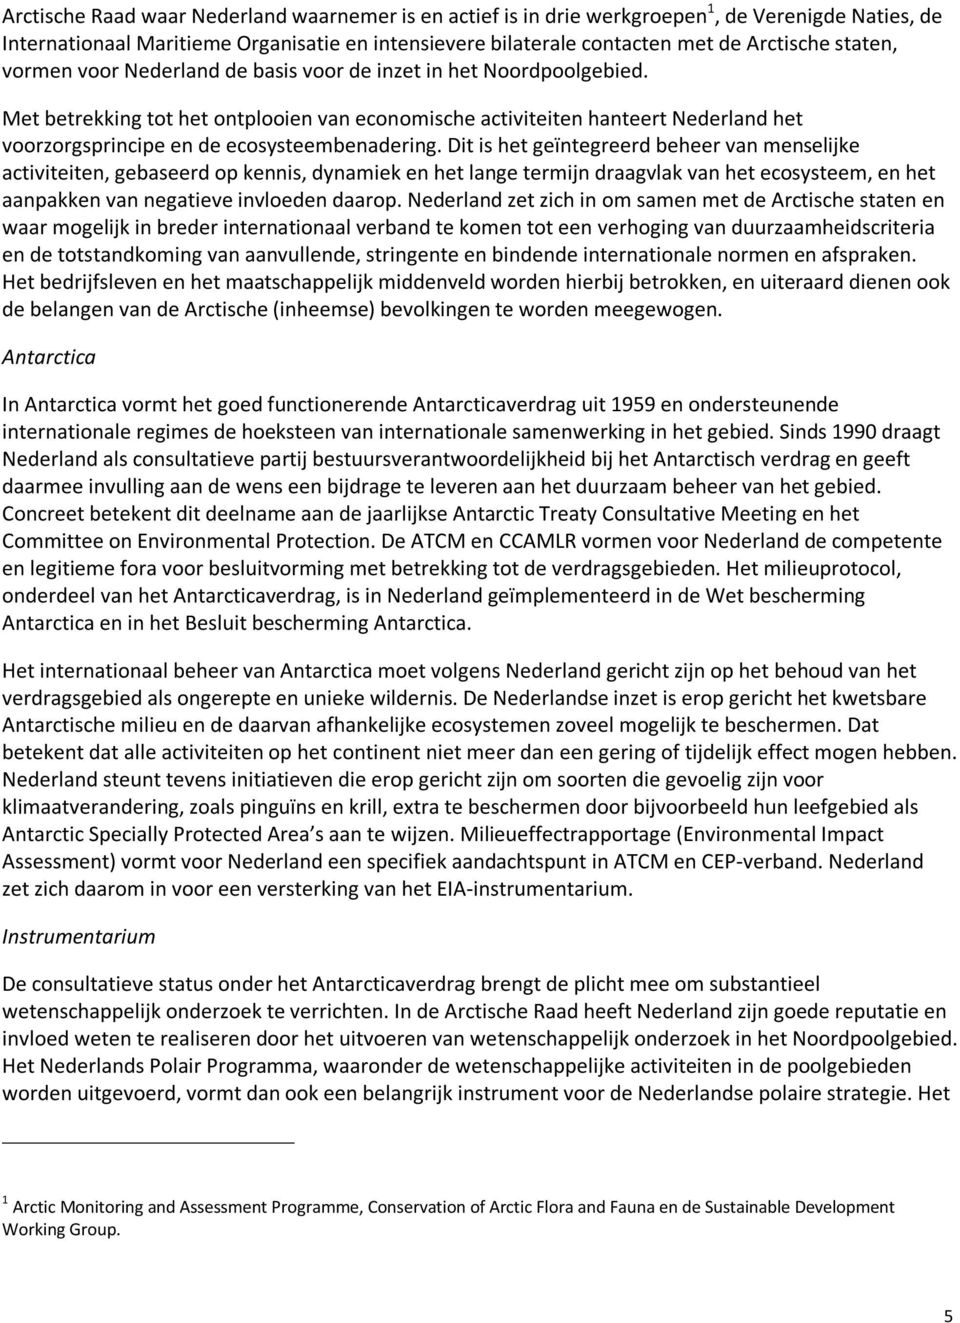 Met betrekking tot het ontplooien van economische activiteiten hanteert Nederland het voorzorgsprincipe en de ecosysteembenadering.